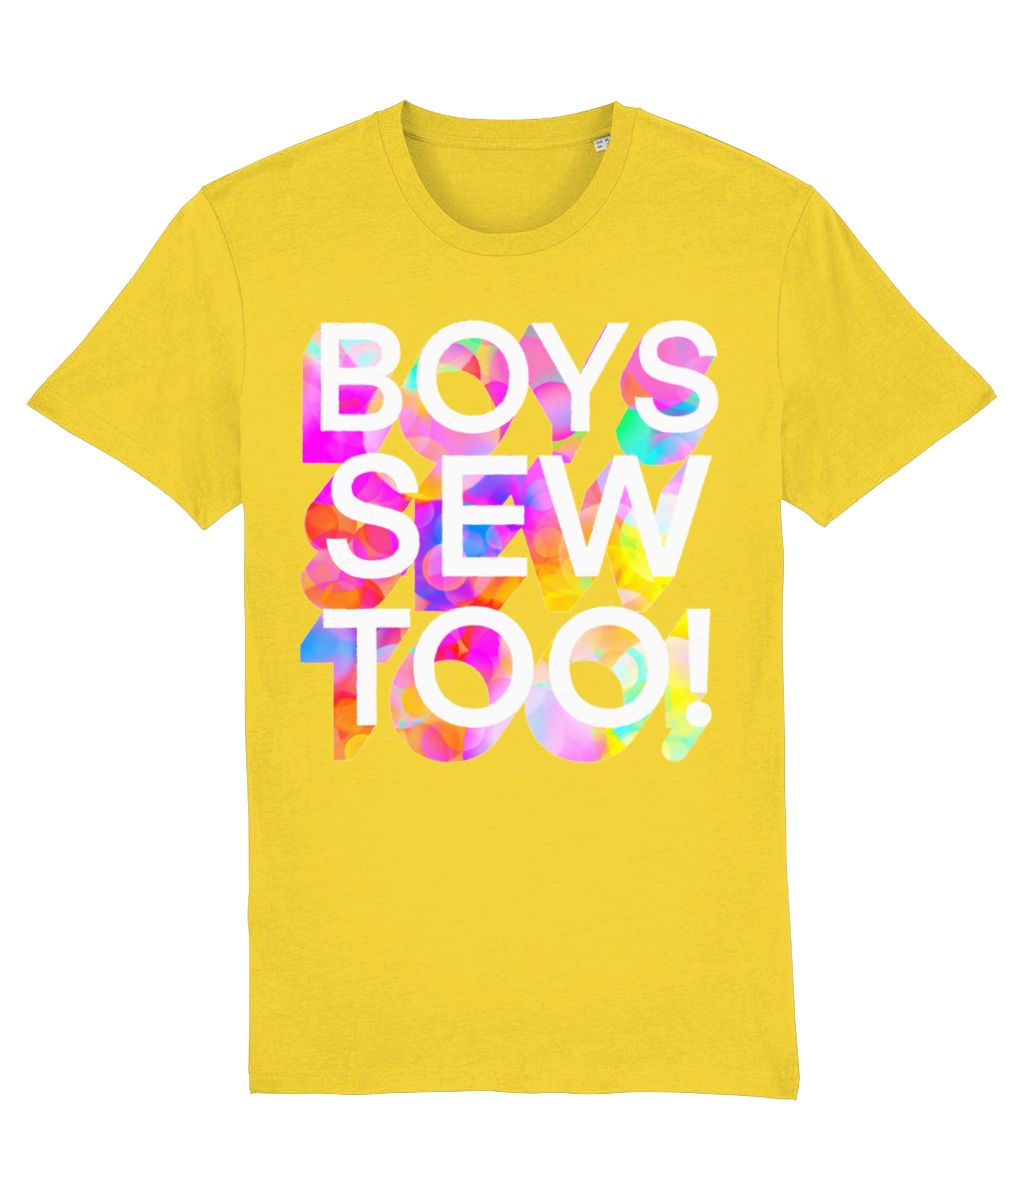 Boys Sew Too Adult T-shirt - Classic